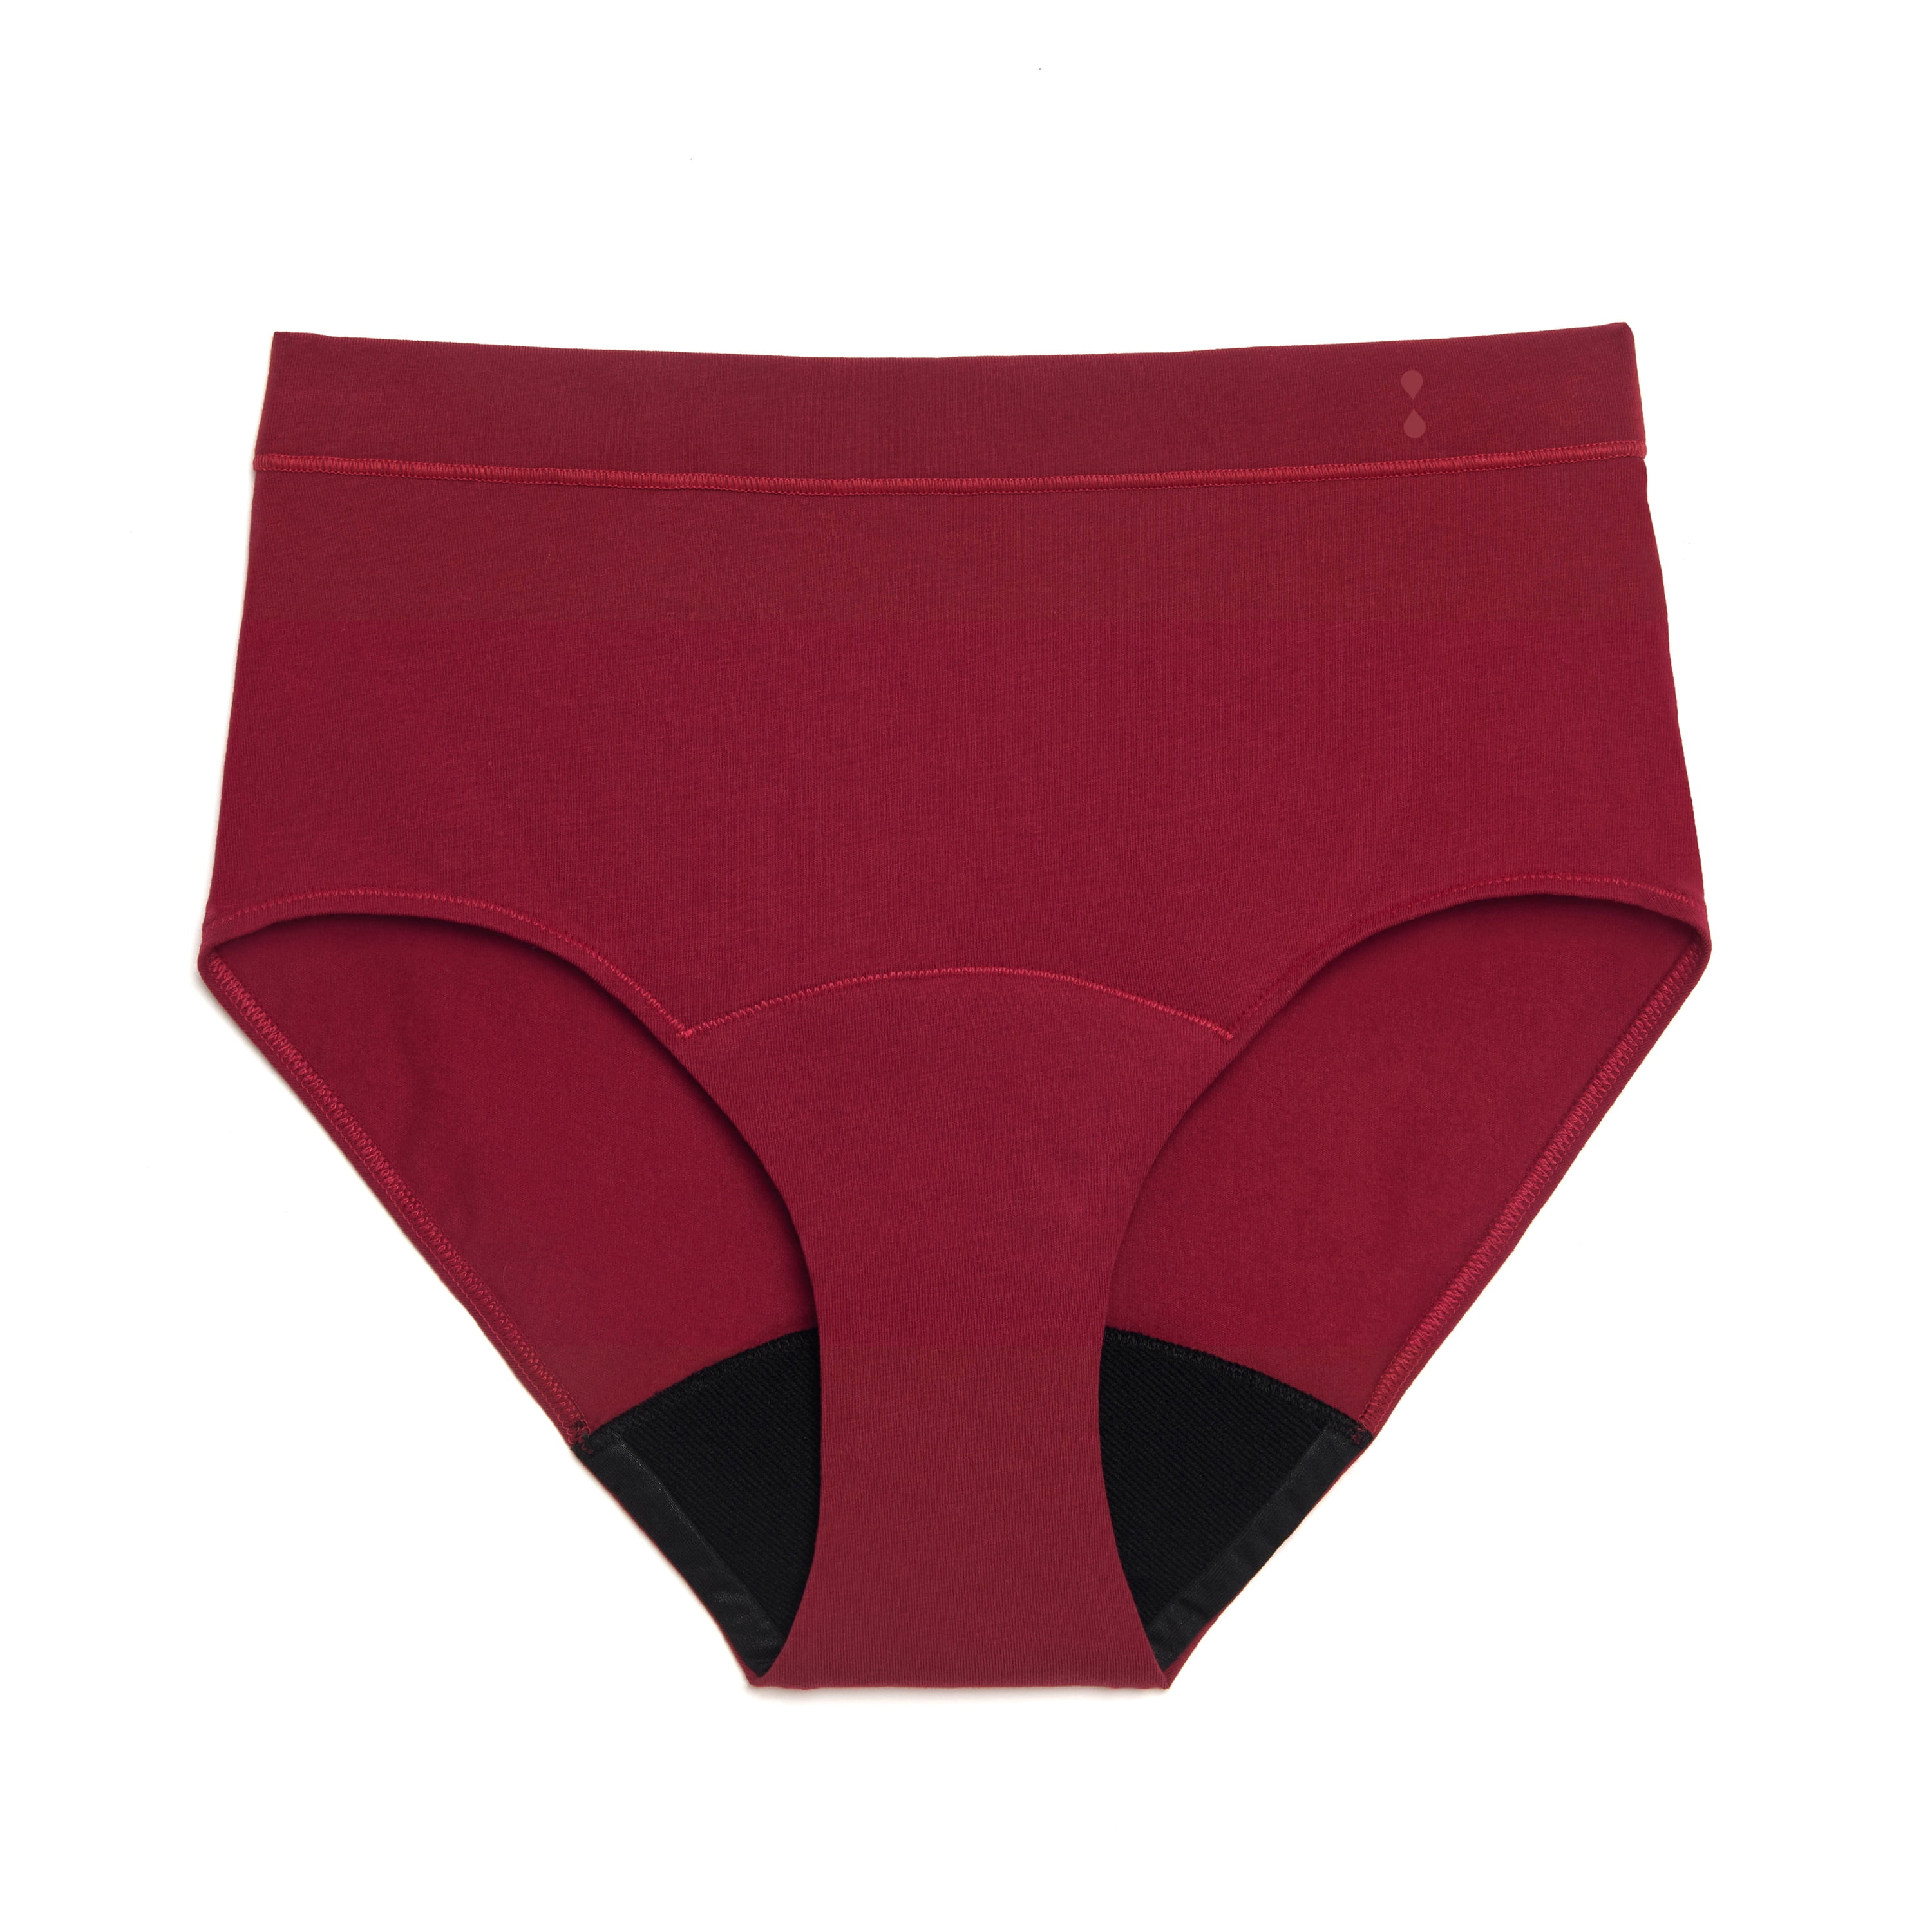 Thinx for All™ Women's Briefs Period Underwear, Super